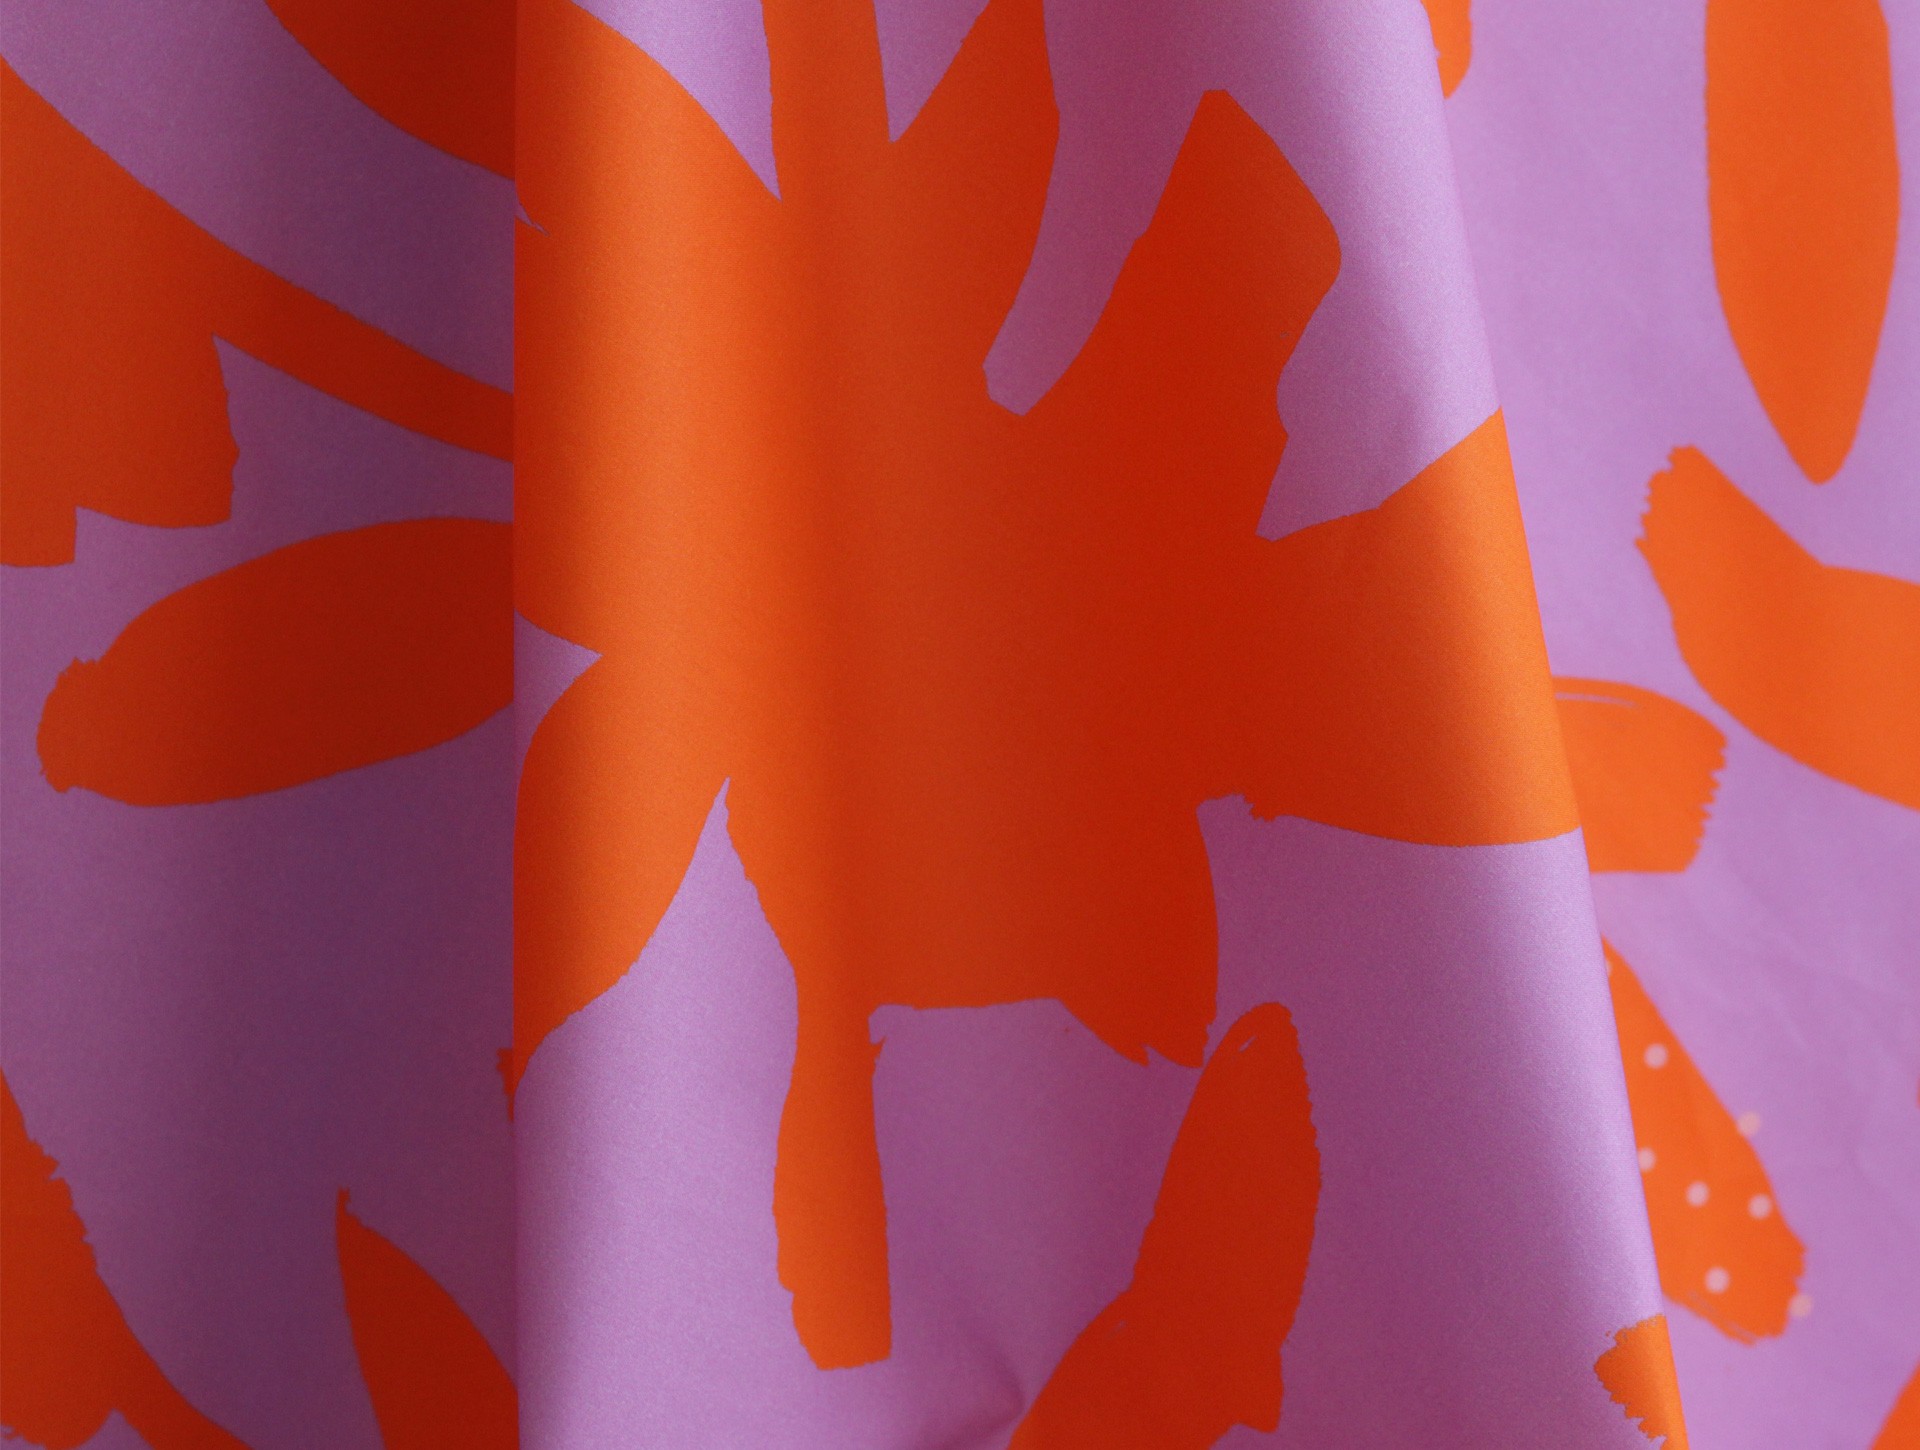 Speciale editie stof 'bloemen' lila | oranje 0,5 meter